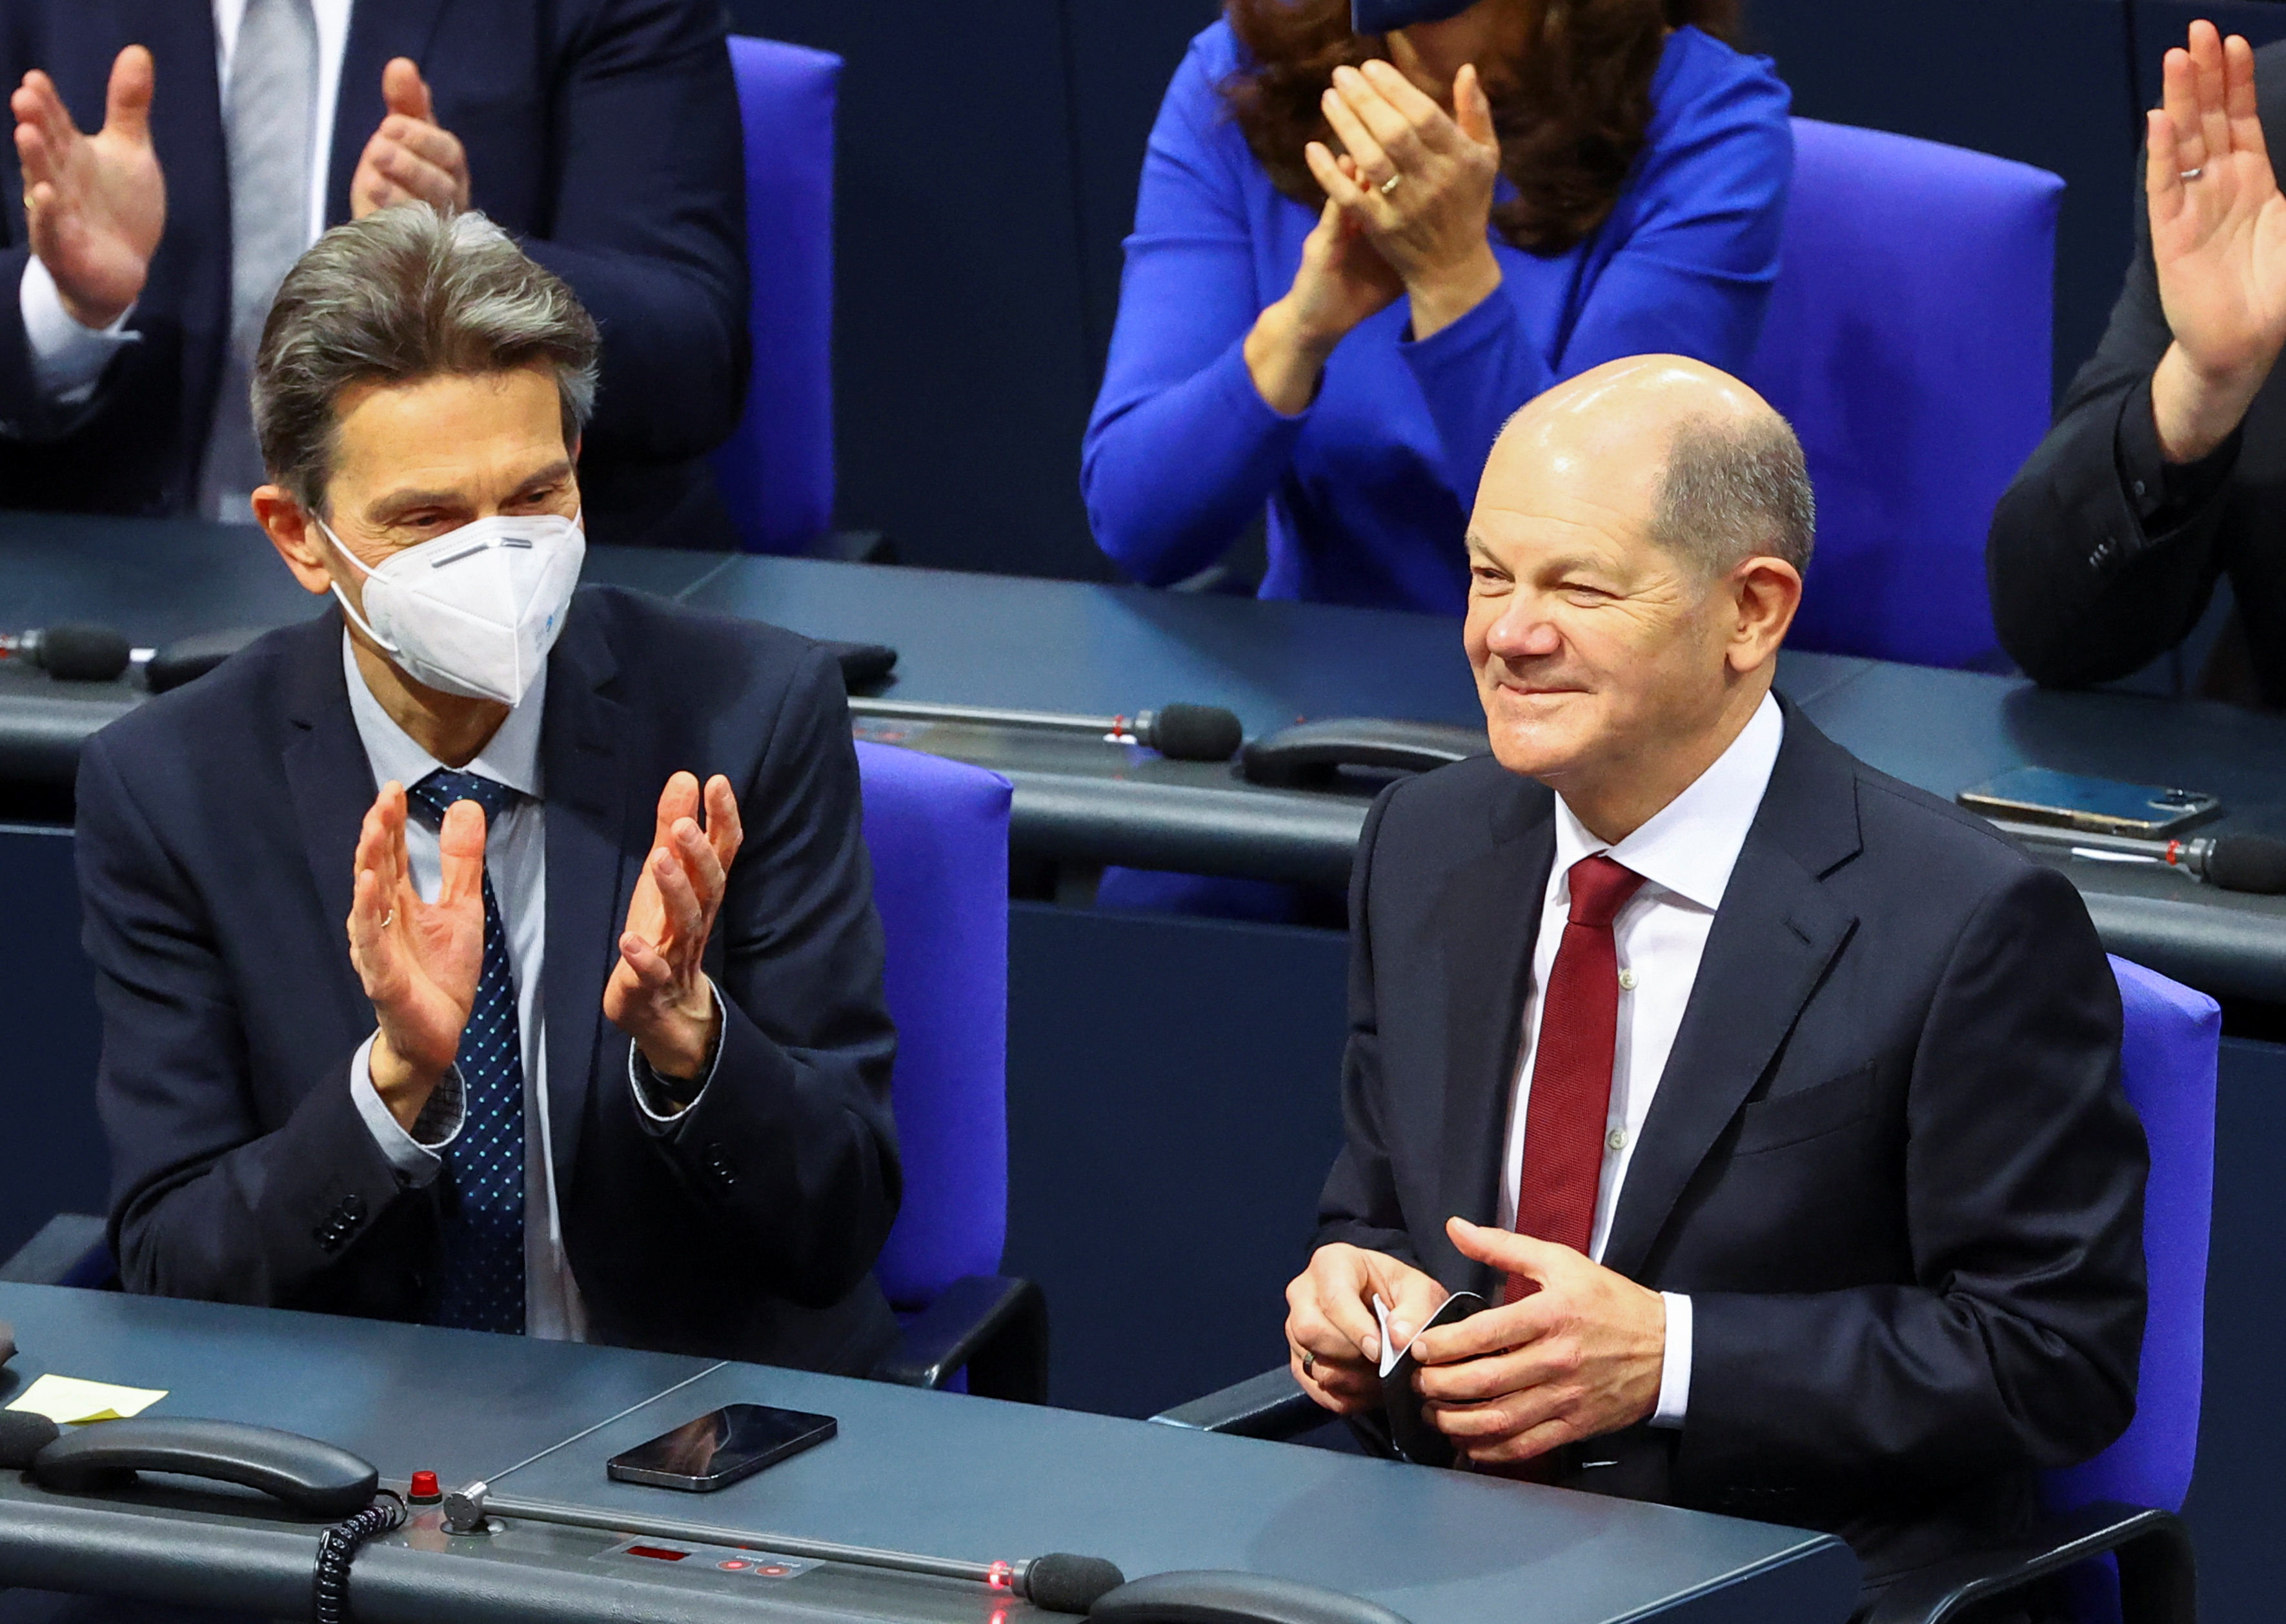 Olaf Scholz recibe el aplauso masivo durante la sesión del parlamento germano, el Bundestag, en Berlín (REUTERS/Fabrizio Bensch)